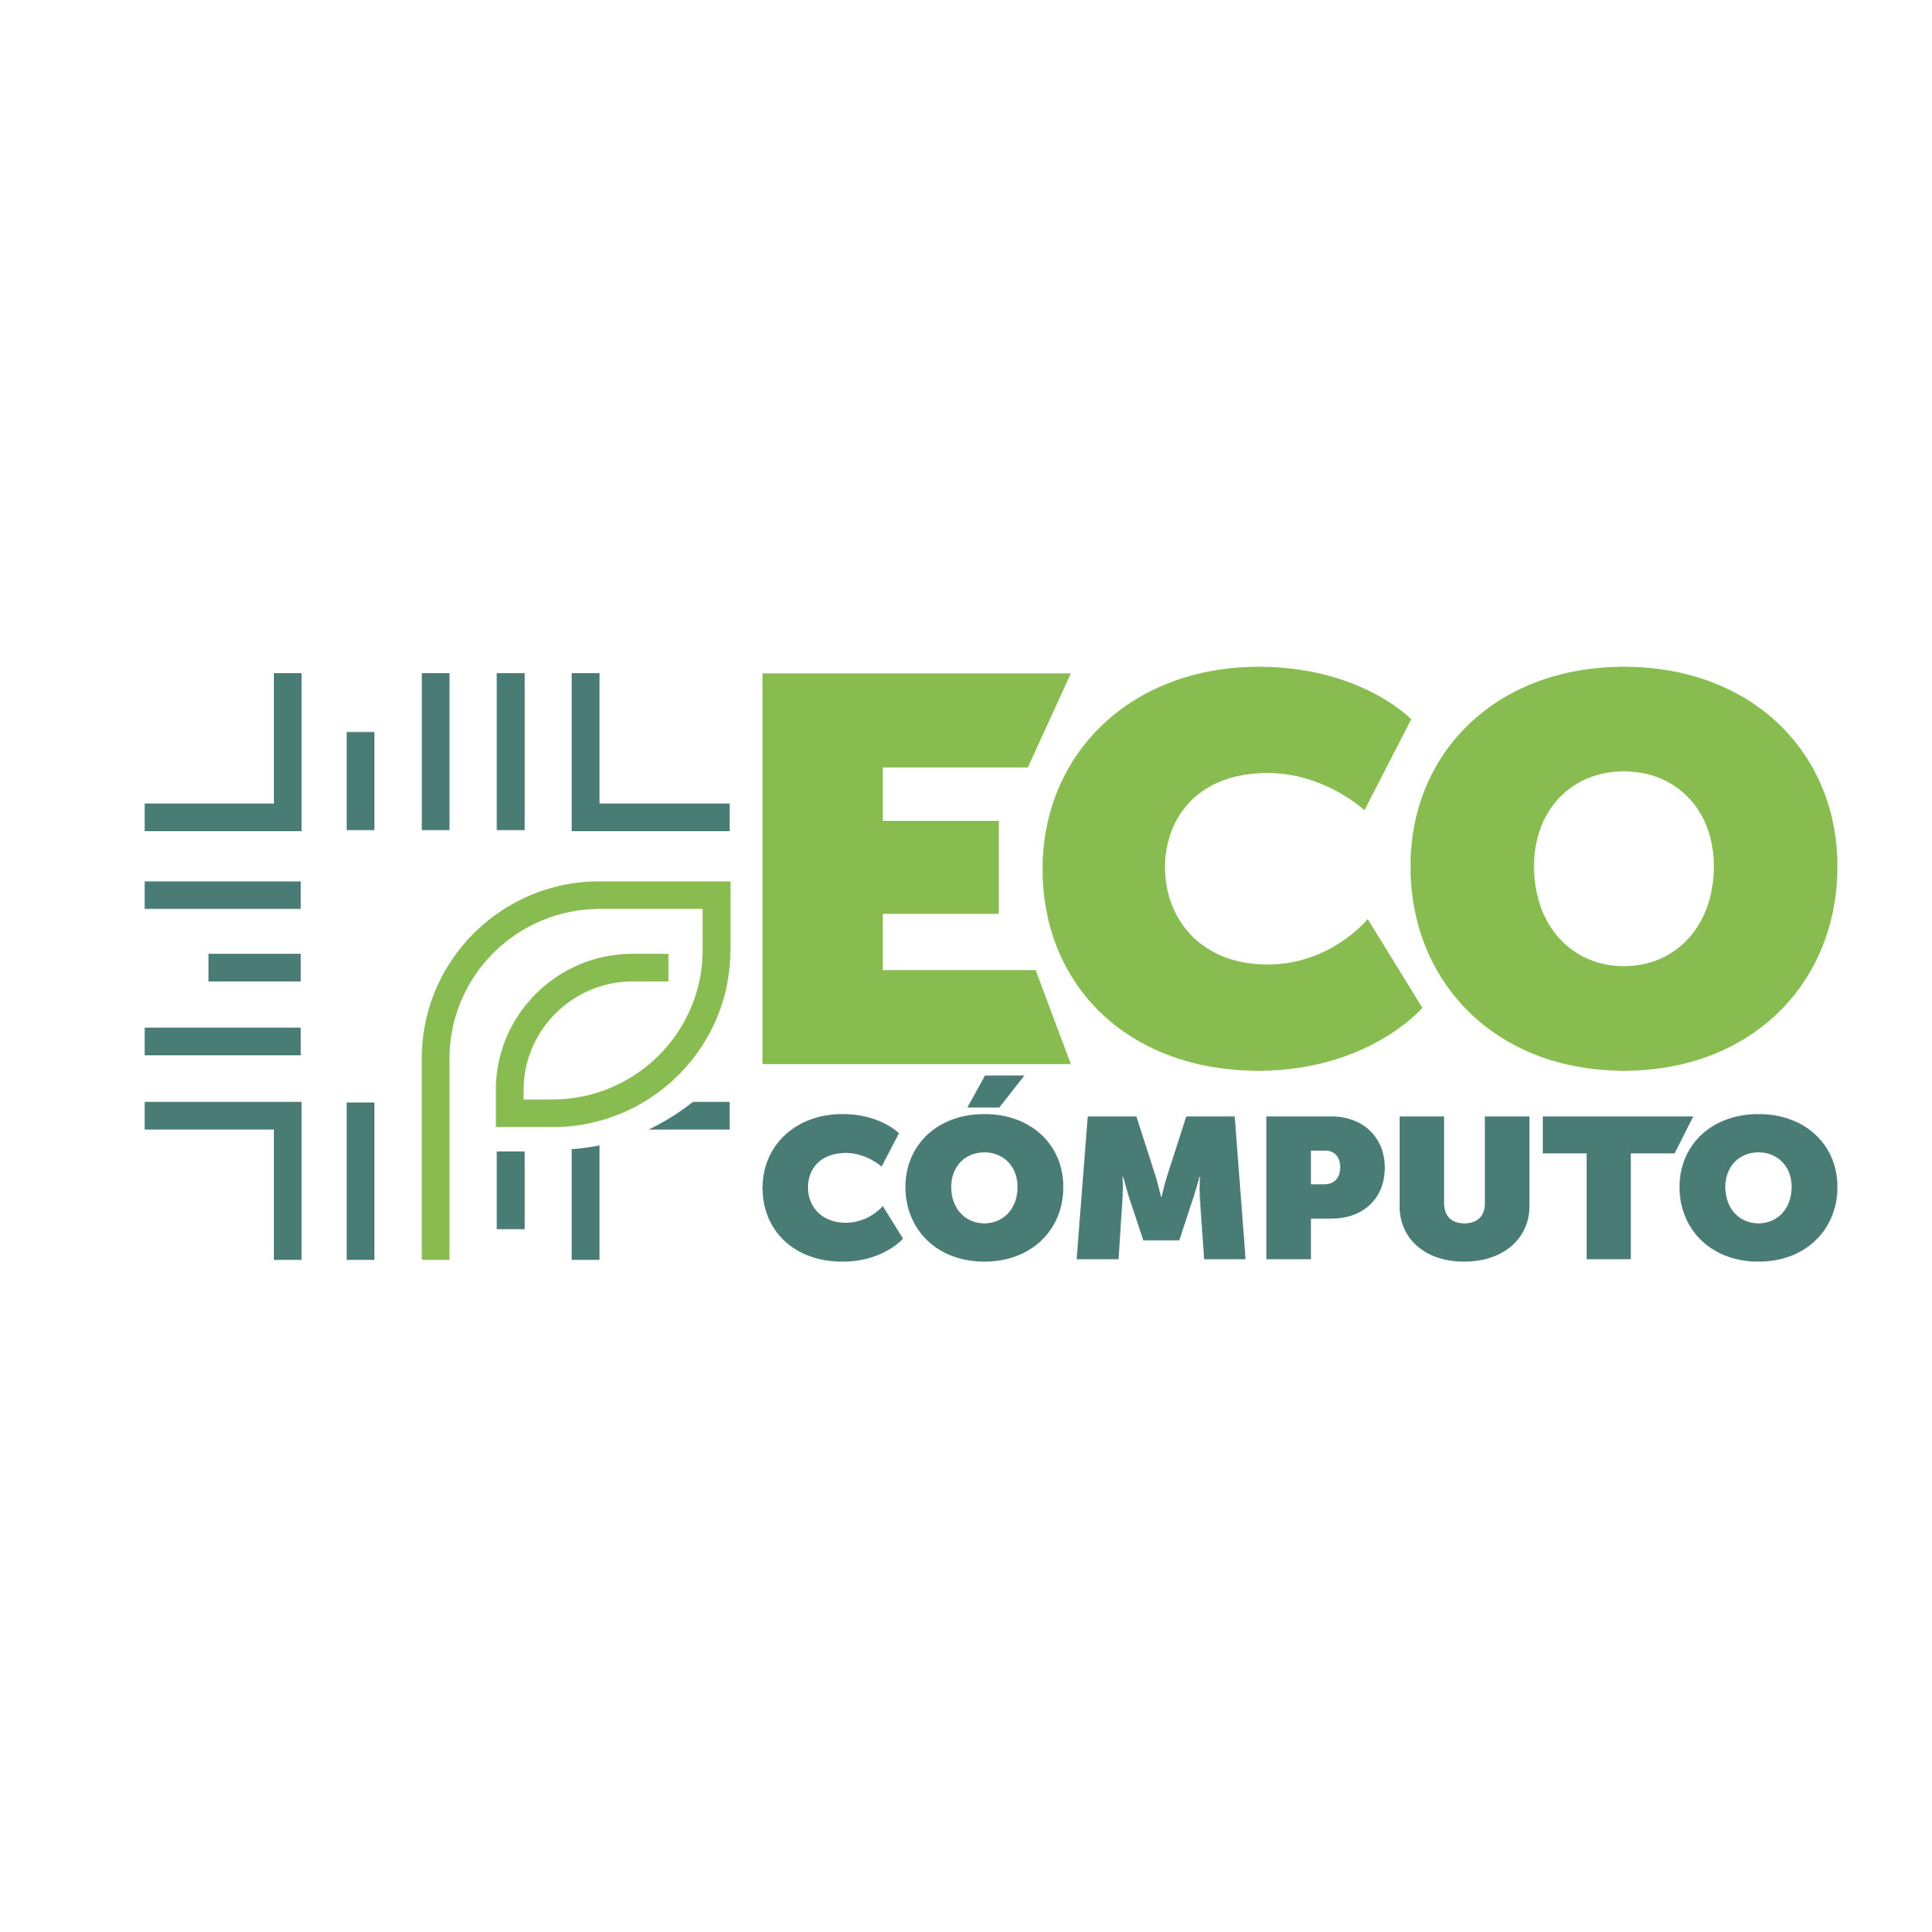 EcoCómputo Logo New